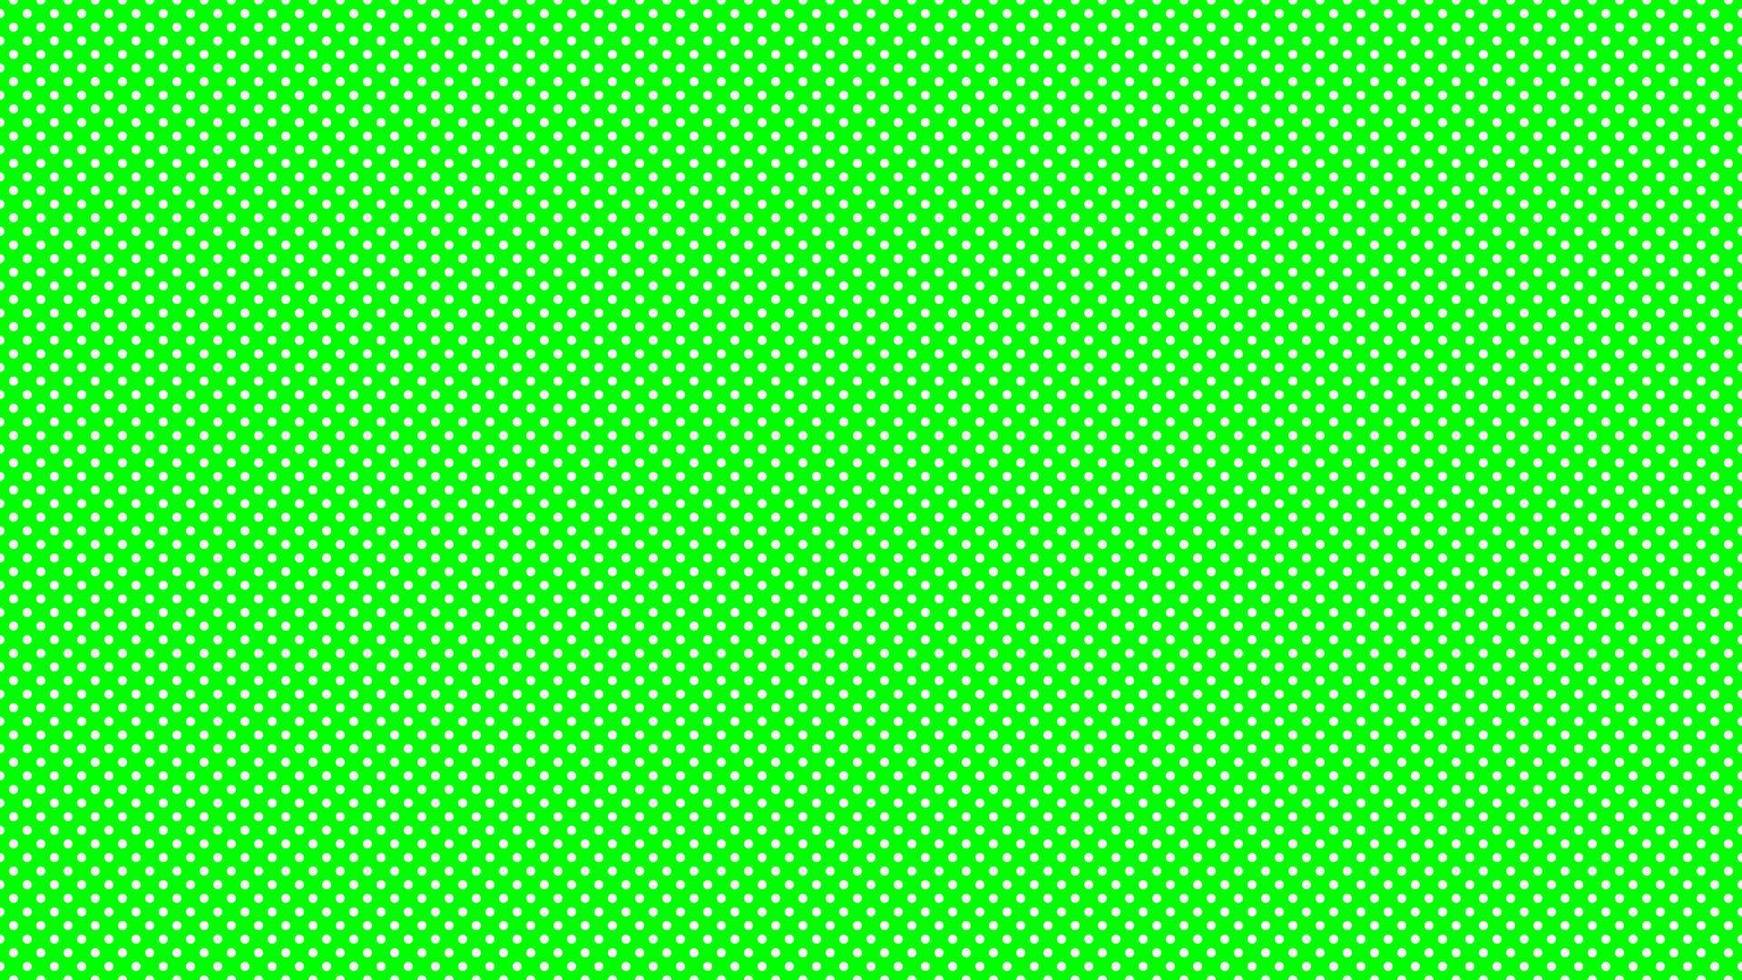 Weiß Farbe Polka Punkte Über Limette Grün Hintergrund vektor